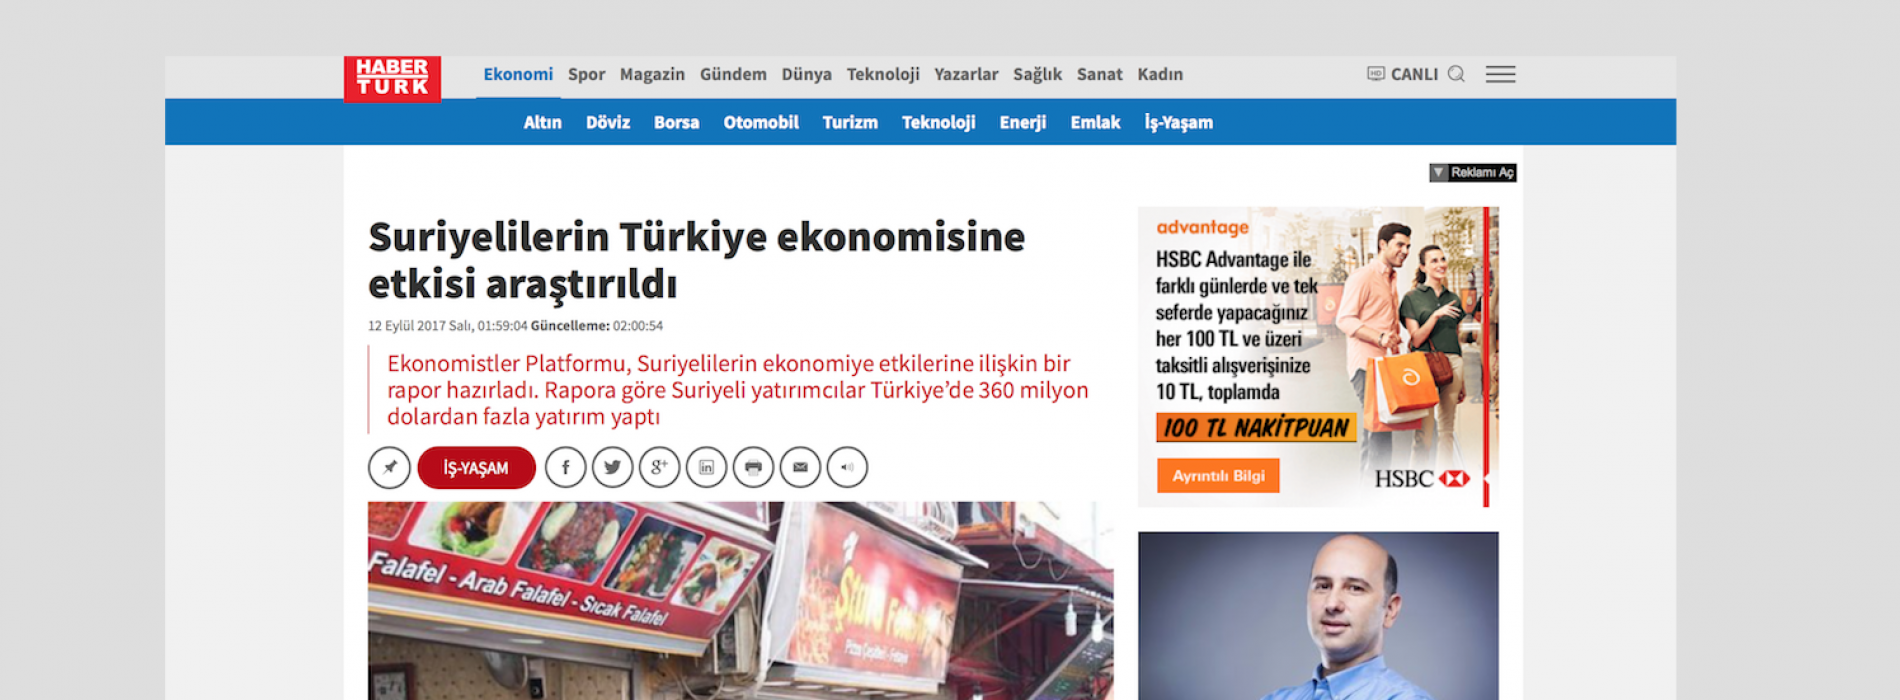 Habertürk: ‘Türkiye’deki Suriyeli Yatırımcılar’